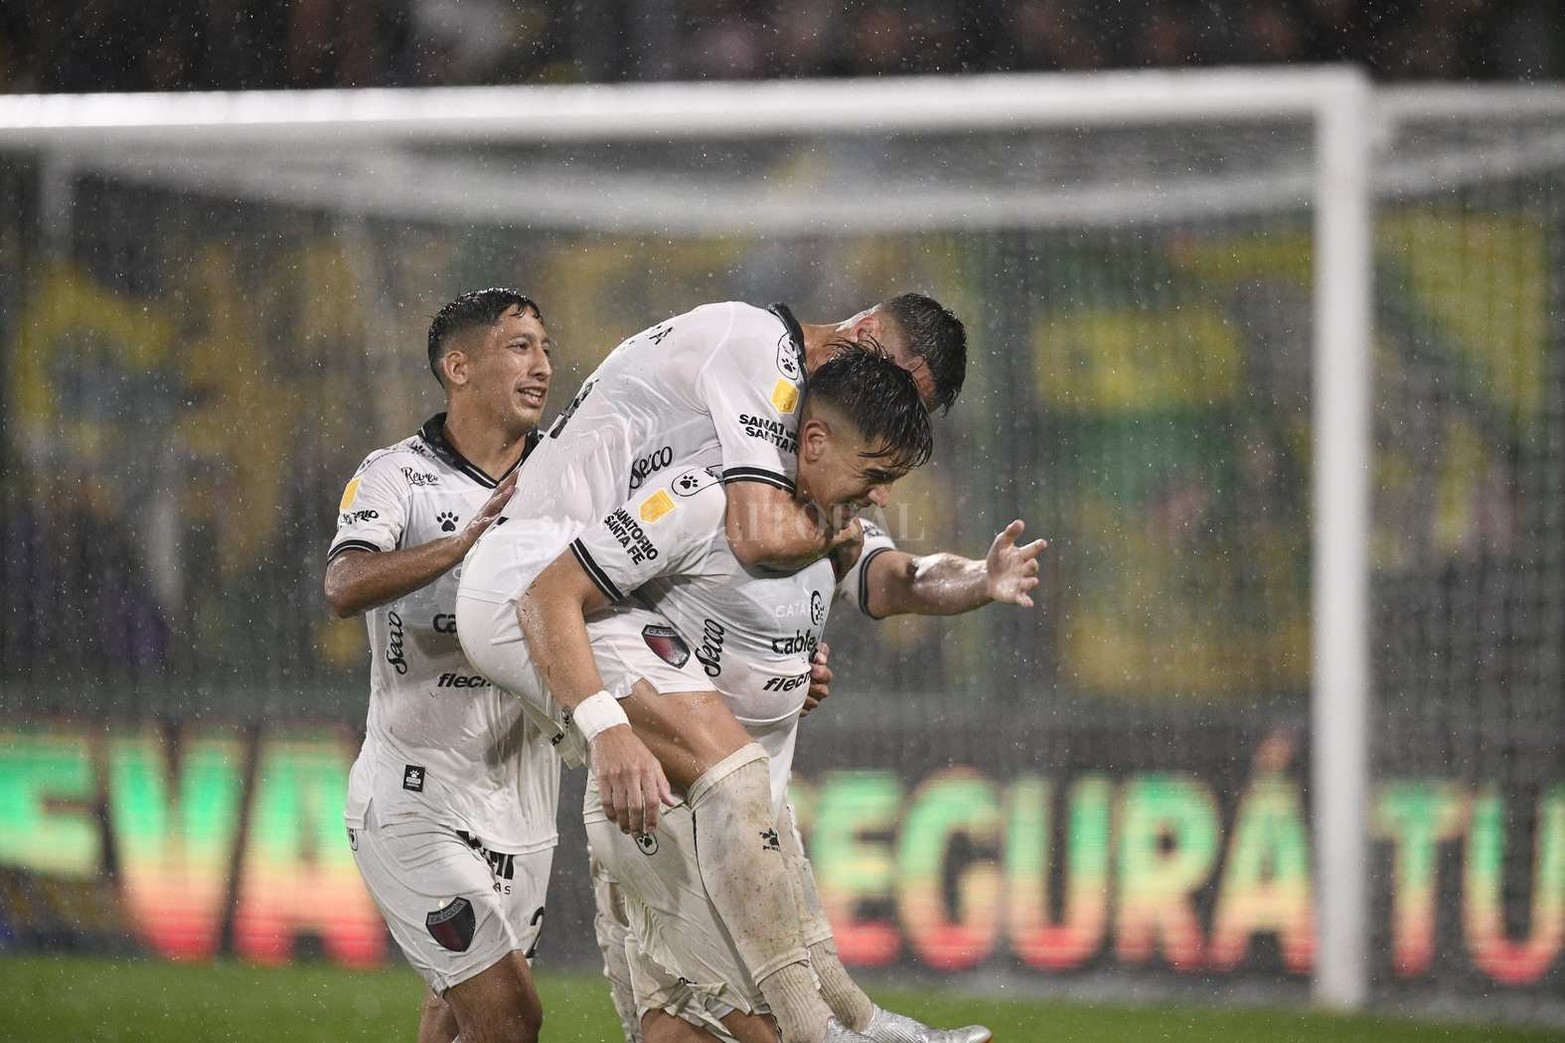 En Buenos Aires, Colón casi le saca el invicto a Defensa y Justicia. Empataron 1 a 1. El partido se jugó bajo la lluvia.